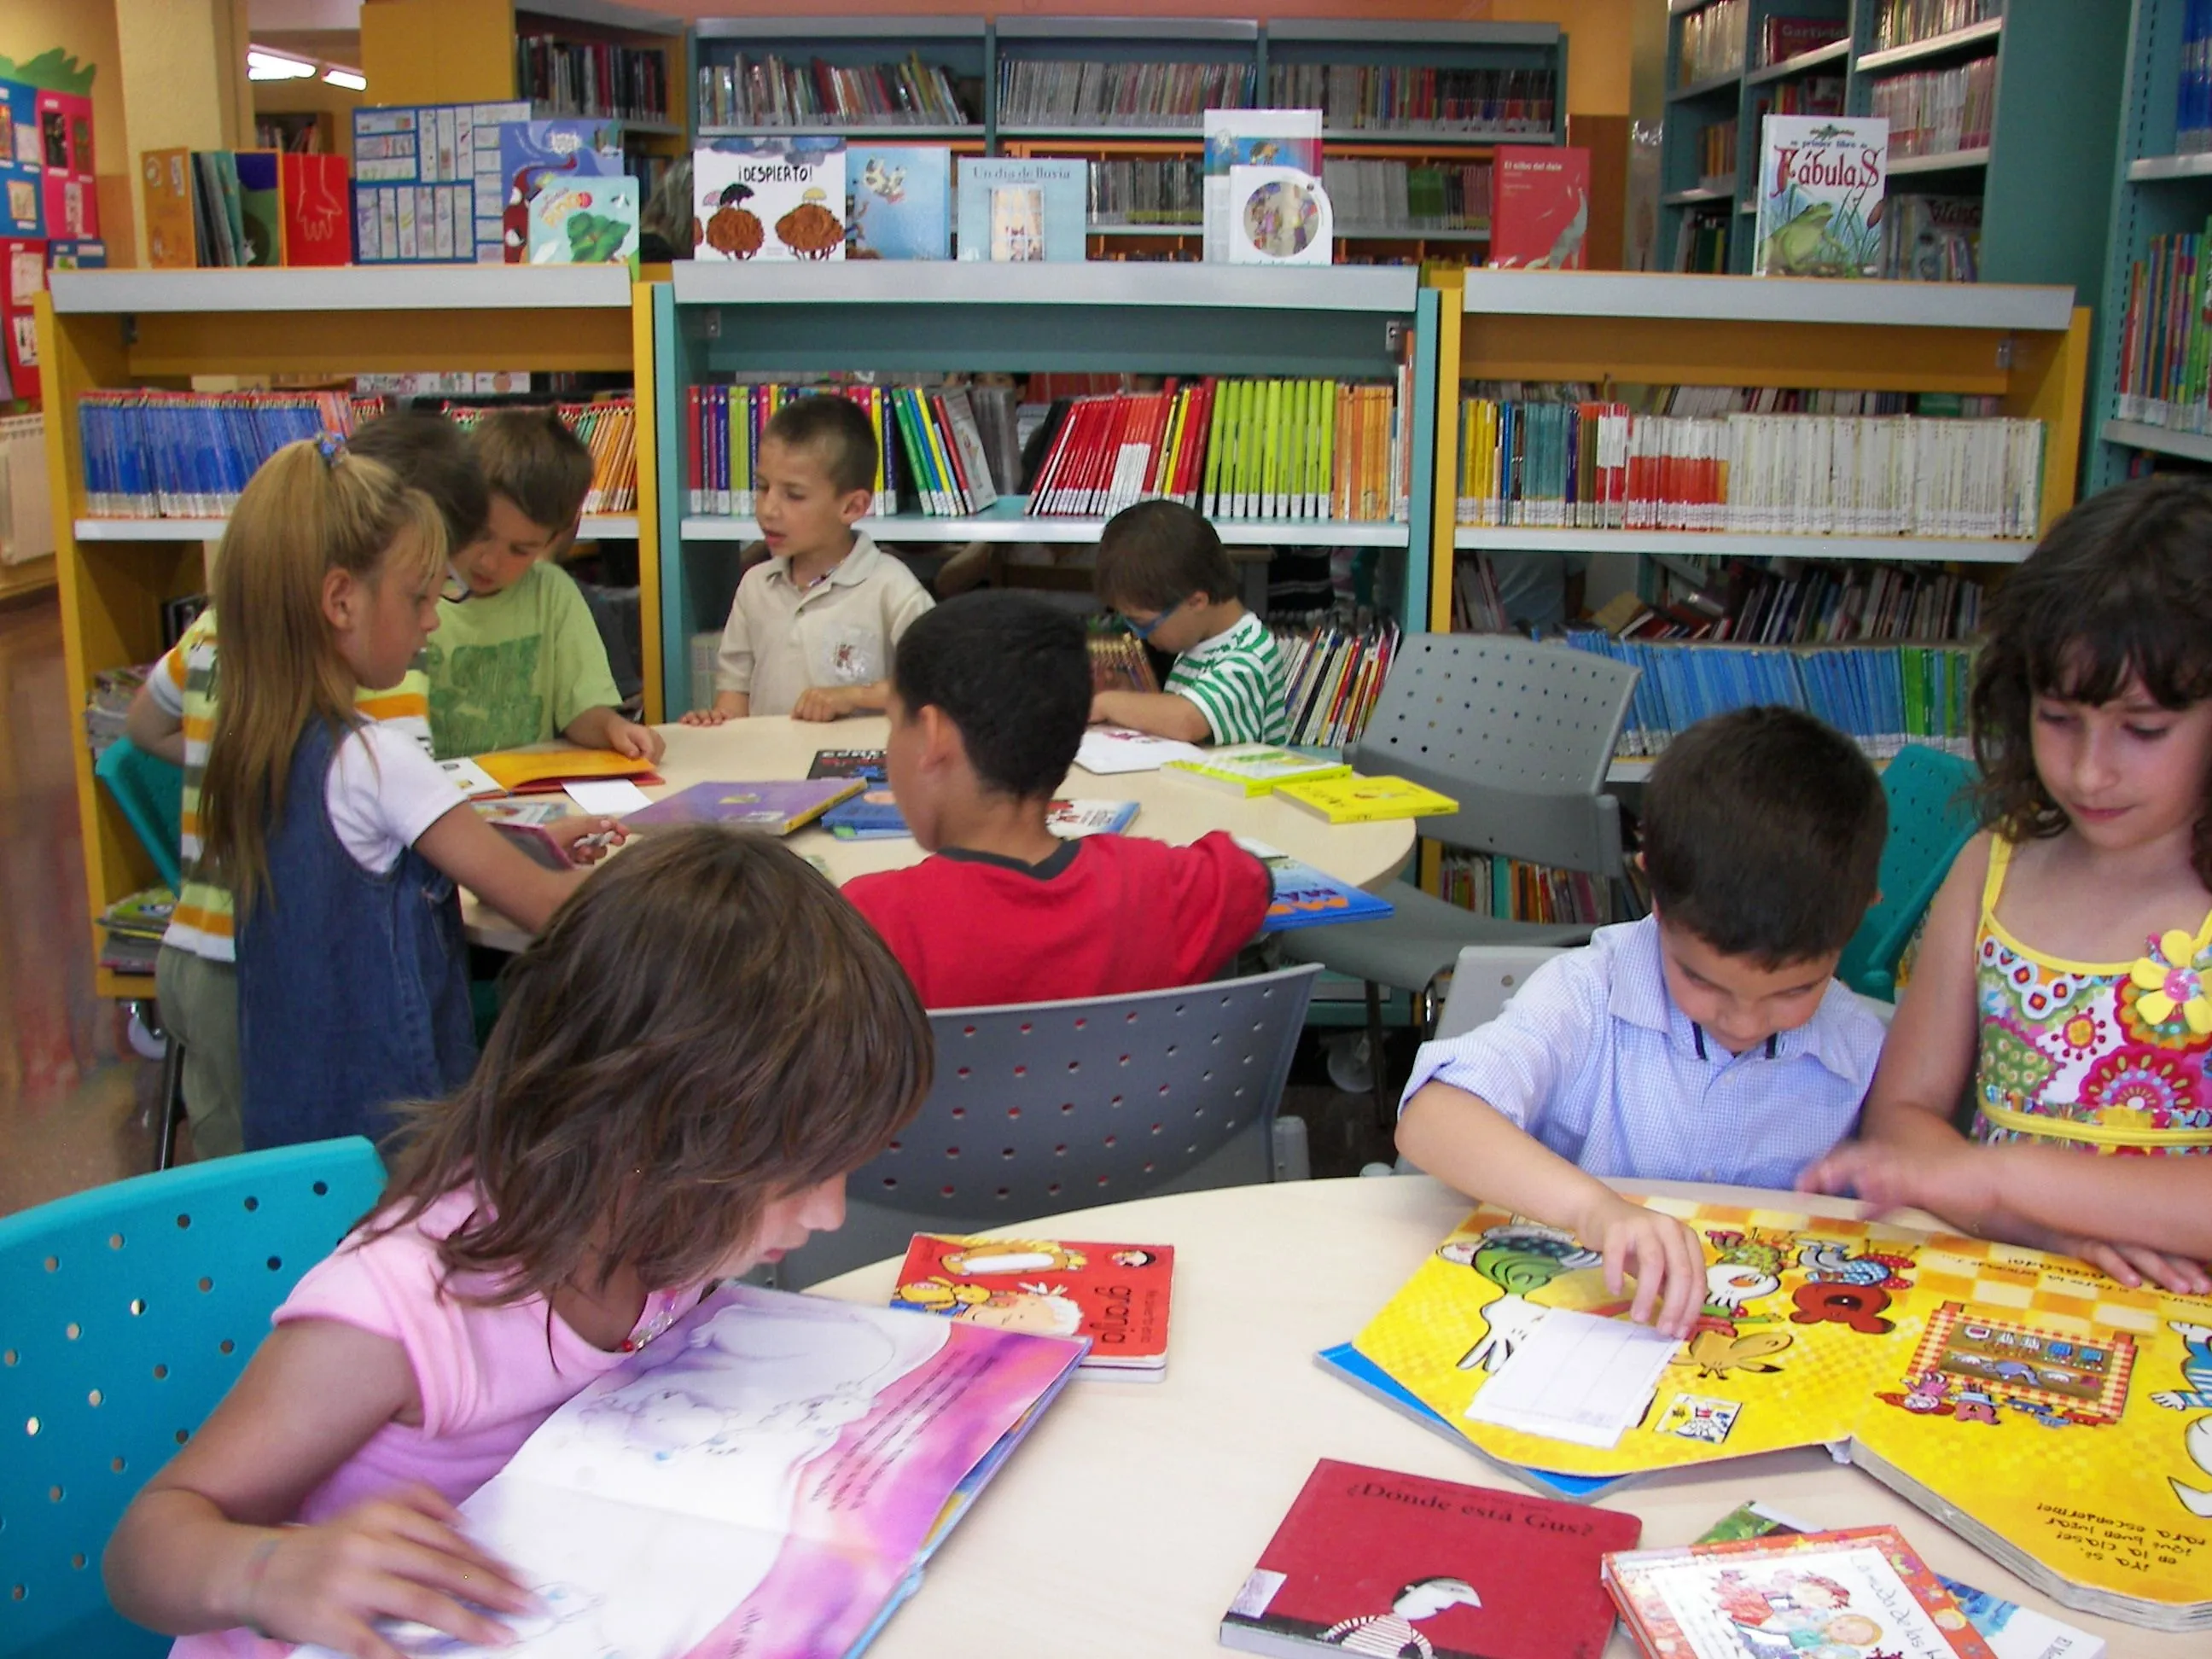 Nos visitan los niños de educación infantil | Biblioteca de Alagón